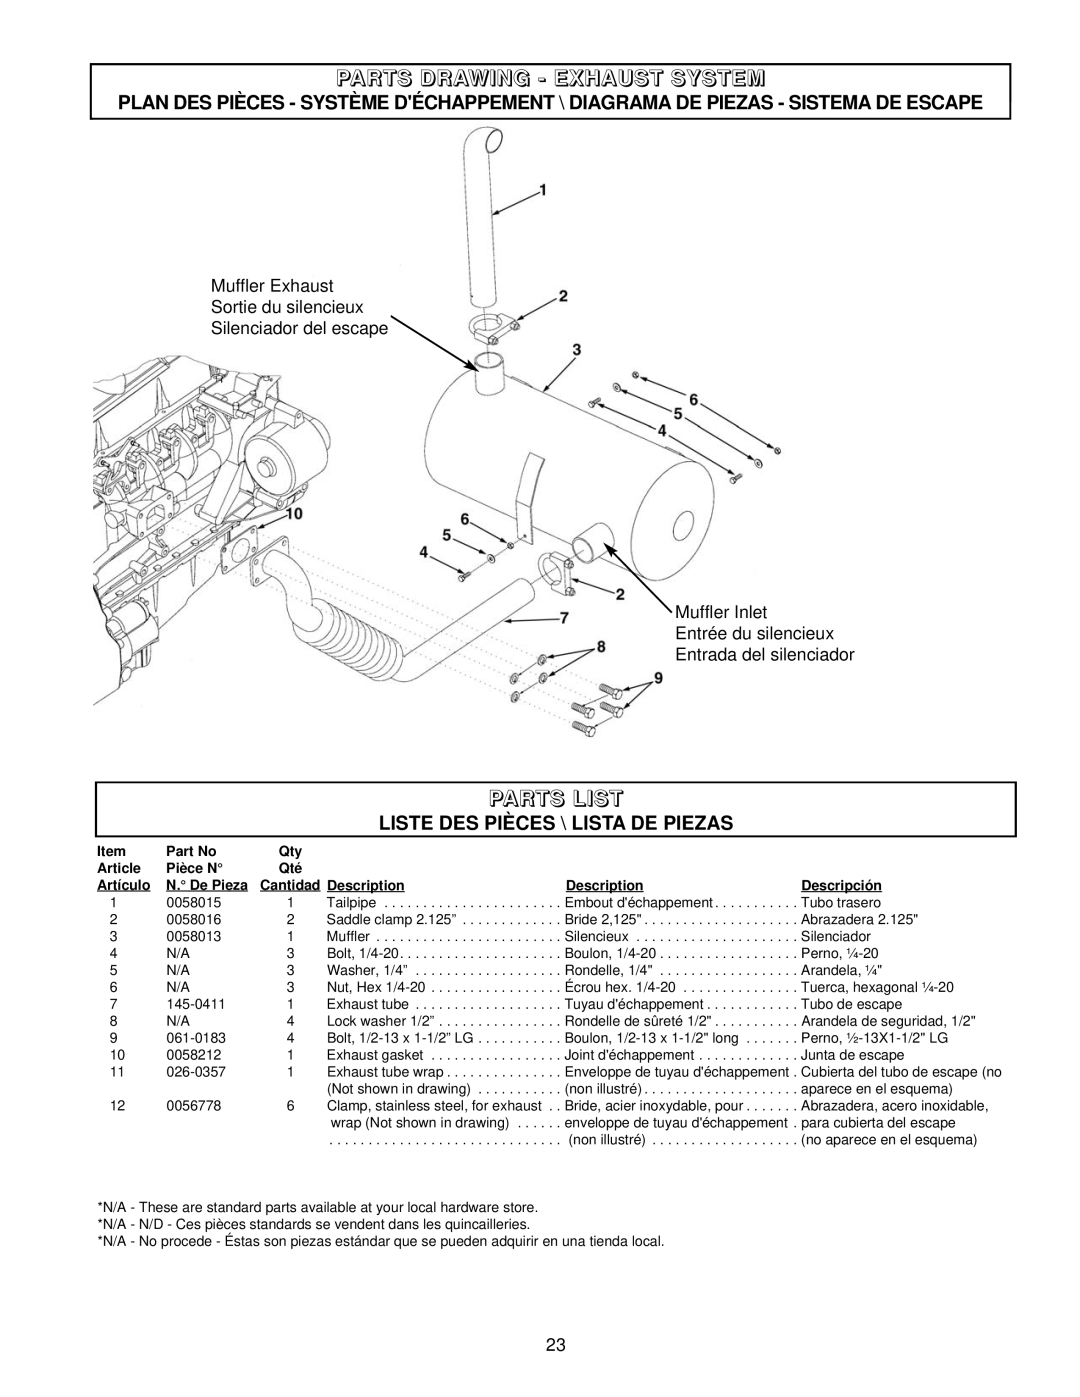 Coleman PM402511 Parts Drawing - Exhaust System, Parts List, Liste Des Pièces \ Lista De Piezas, Article, Pièce N 